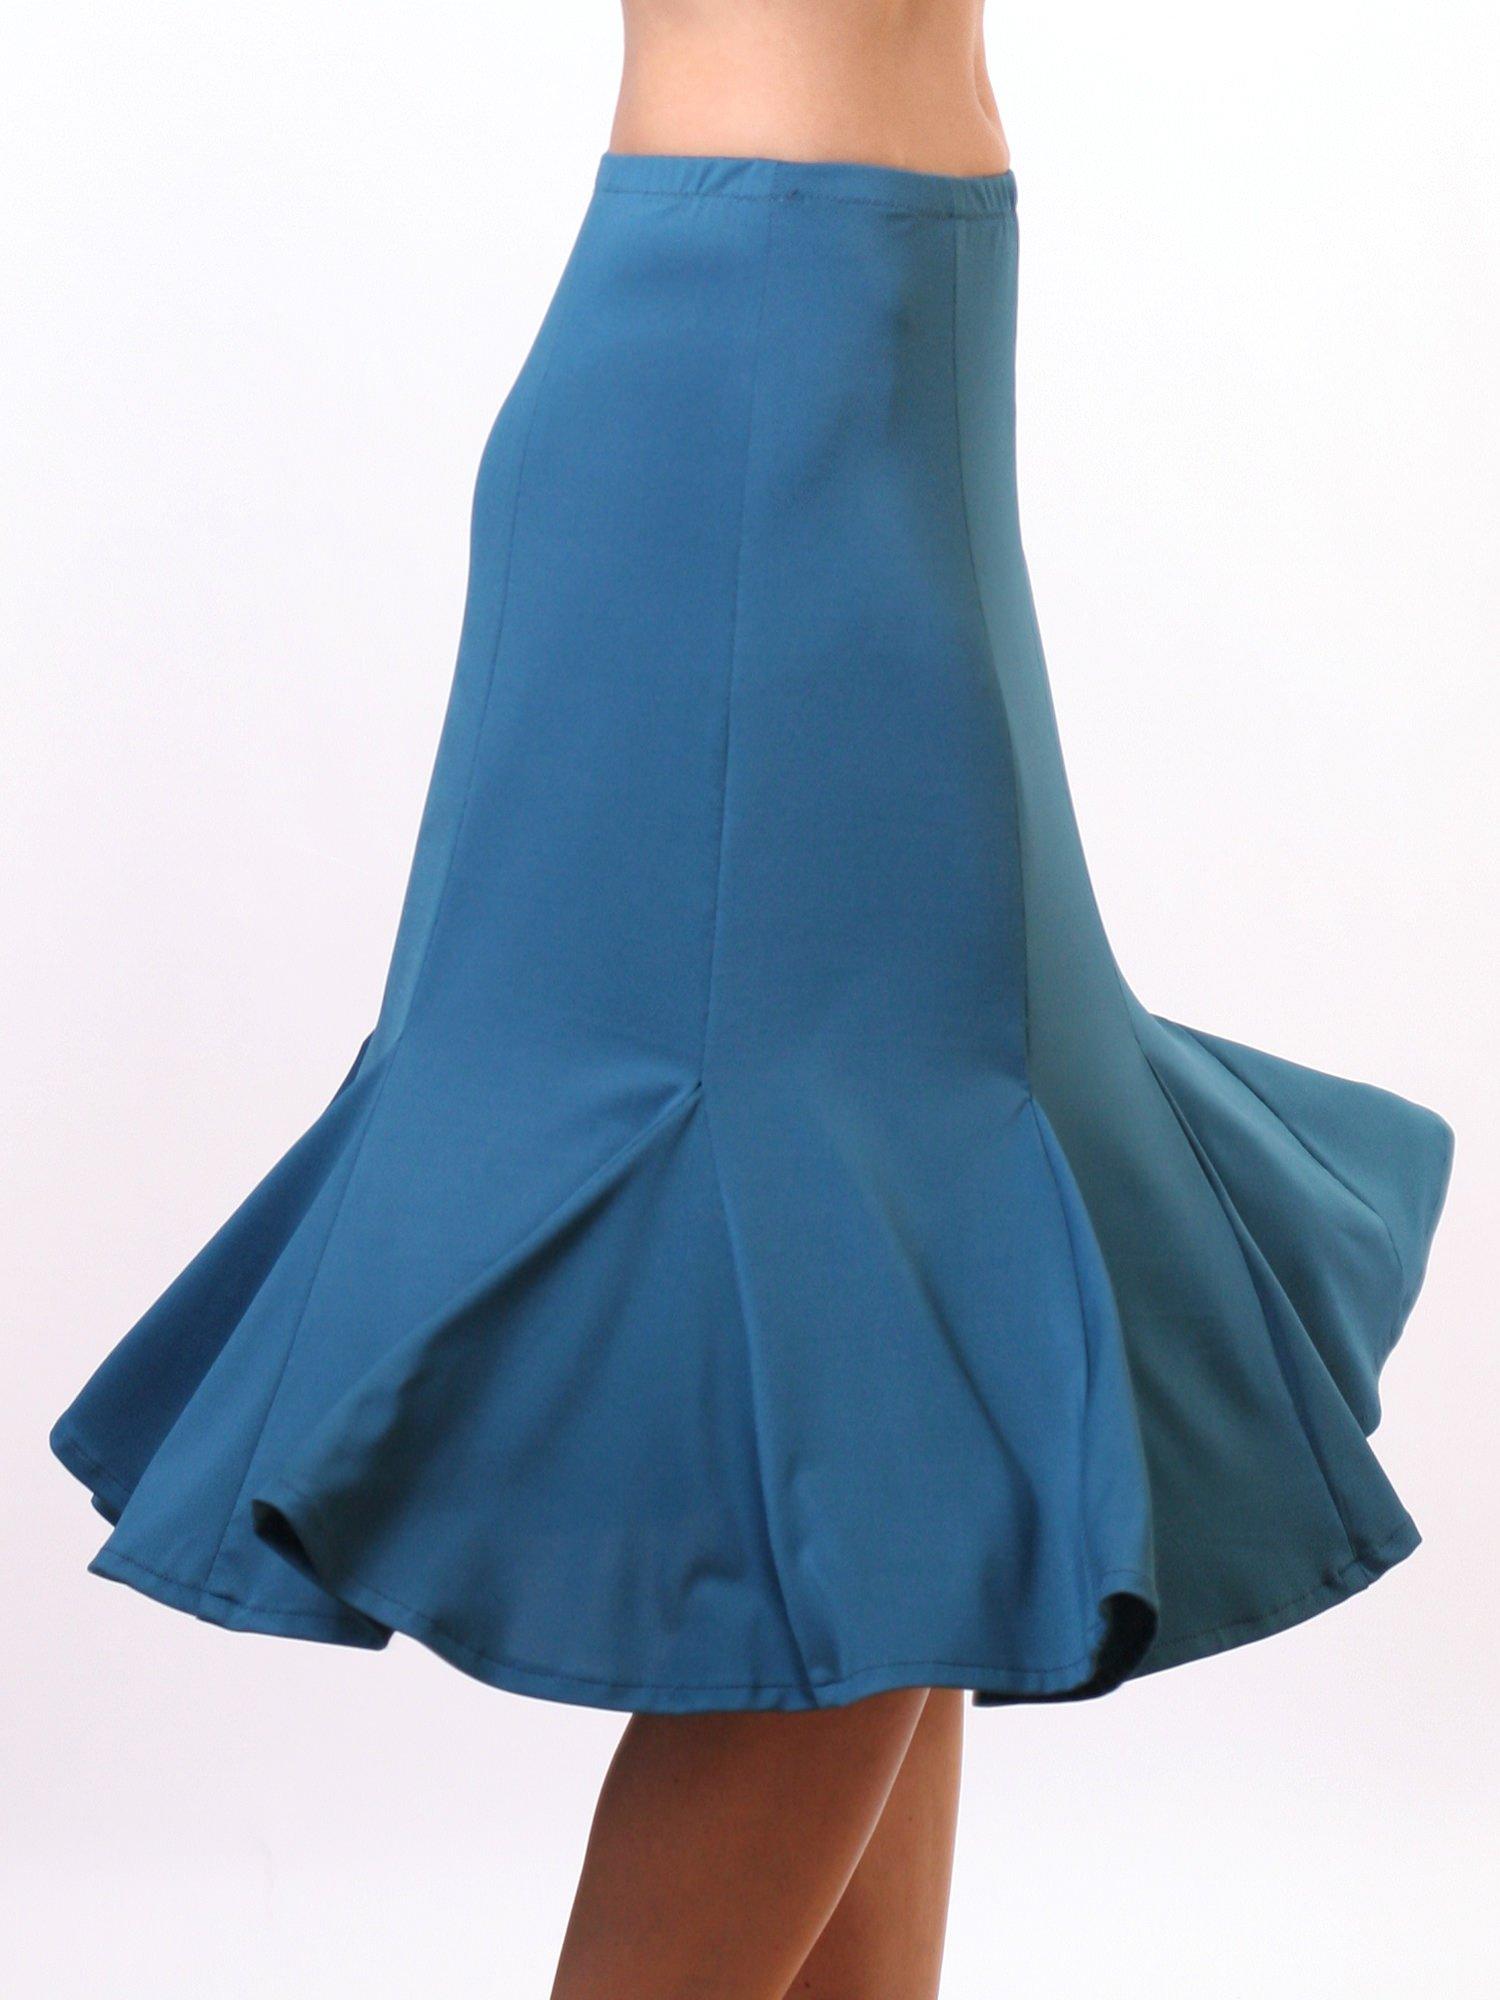 Jalie 2681 - Knee-Length Godet Skirt